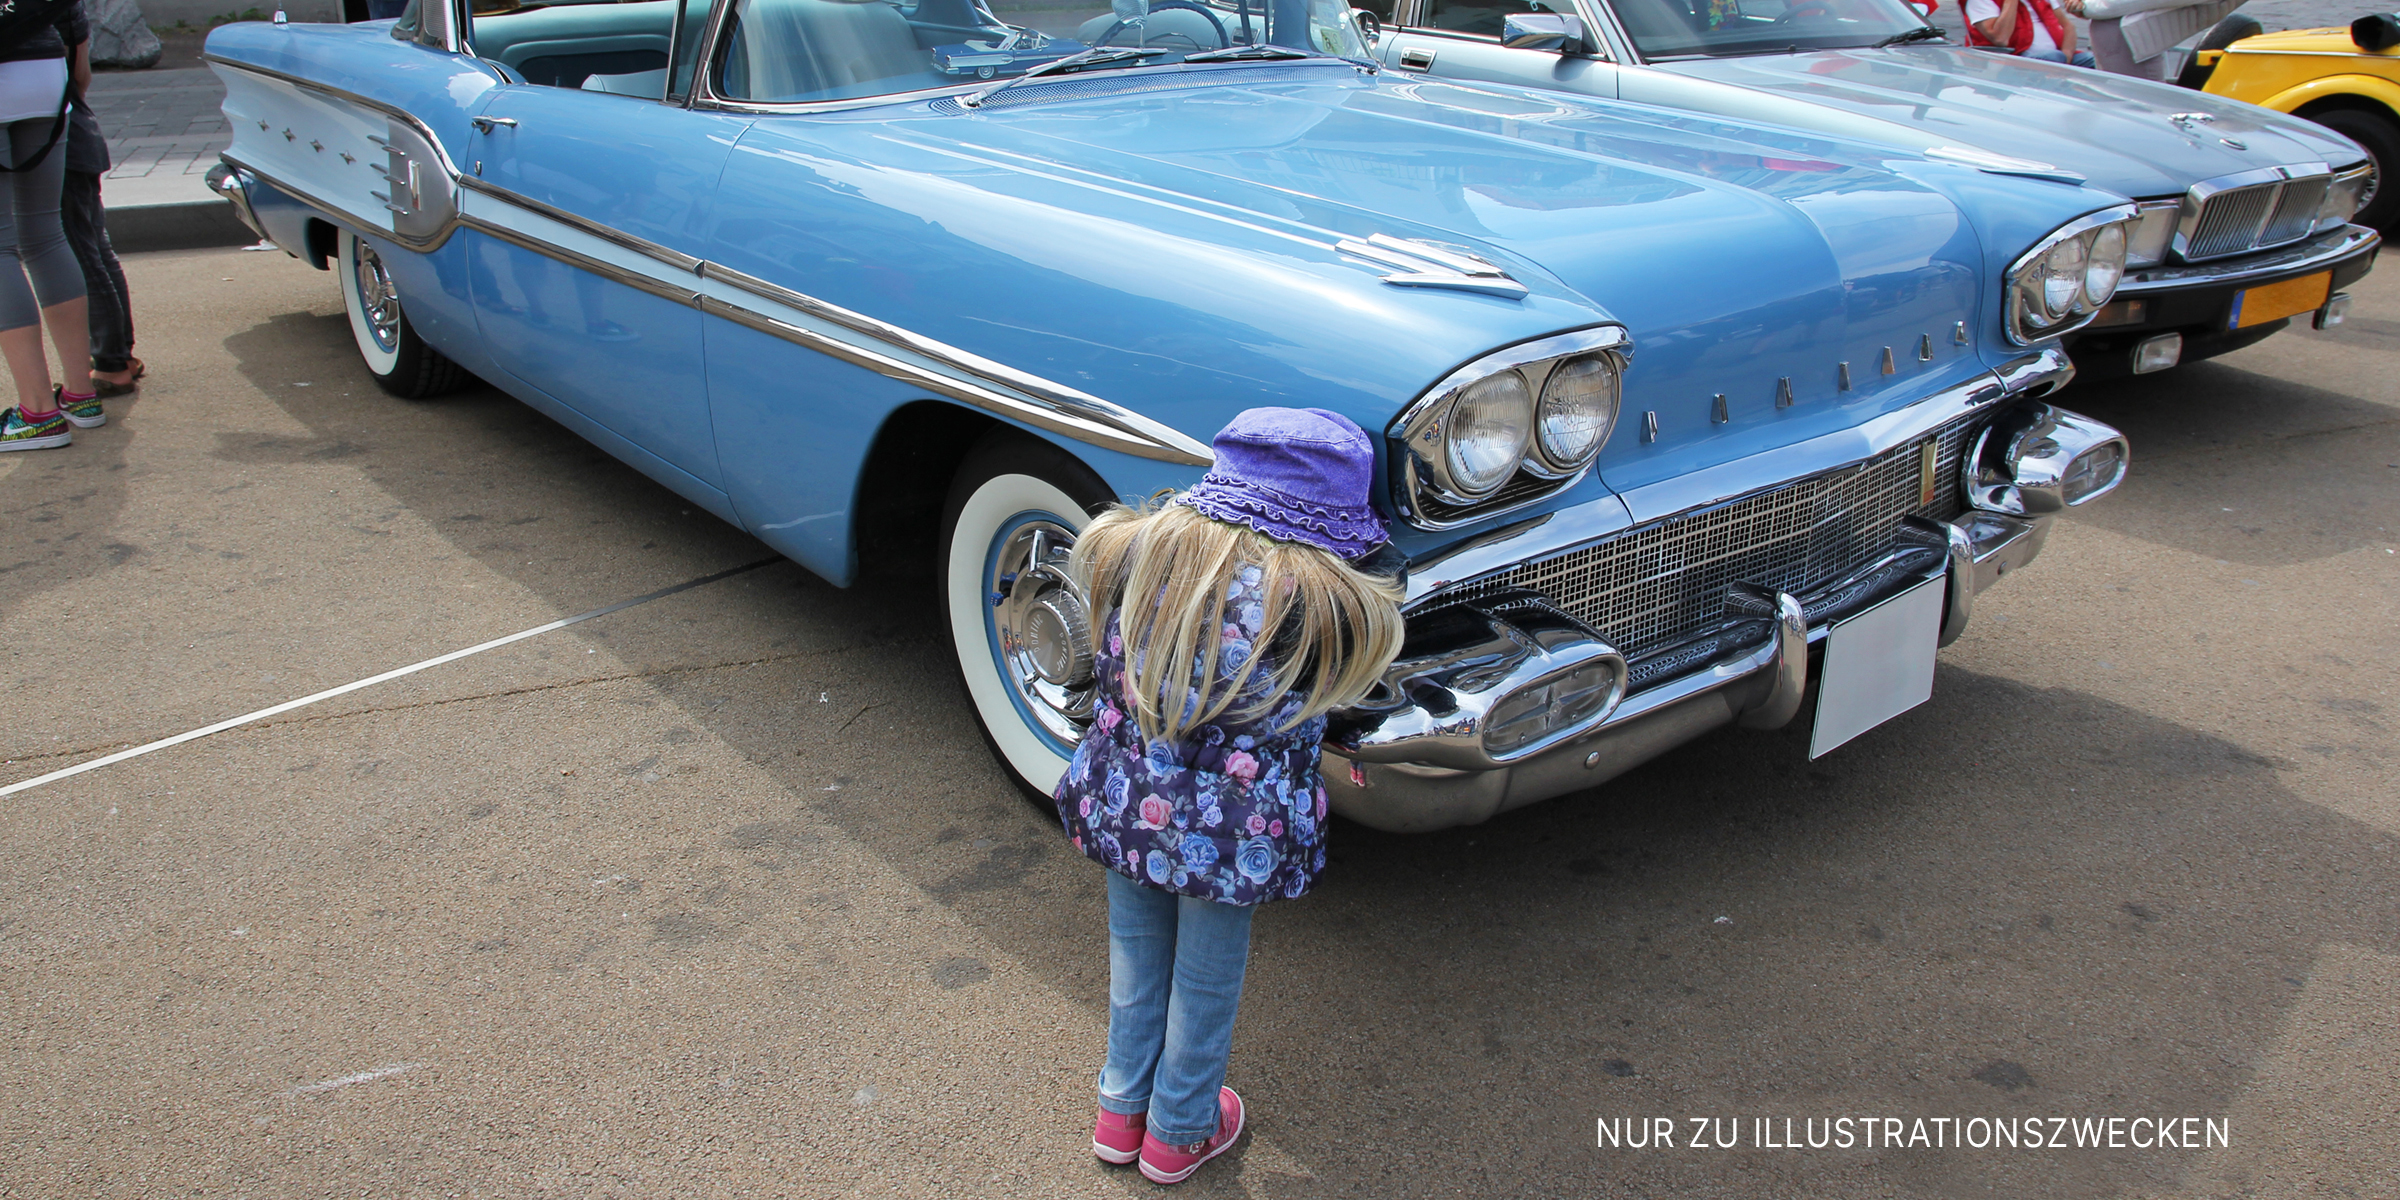 Kind steht neben Auto | Quelle: Flickr / Theo Stikkelman (CC BY 2.0)